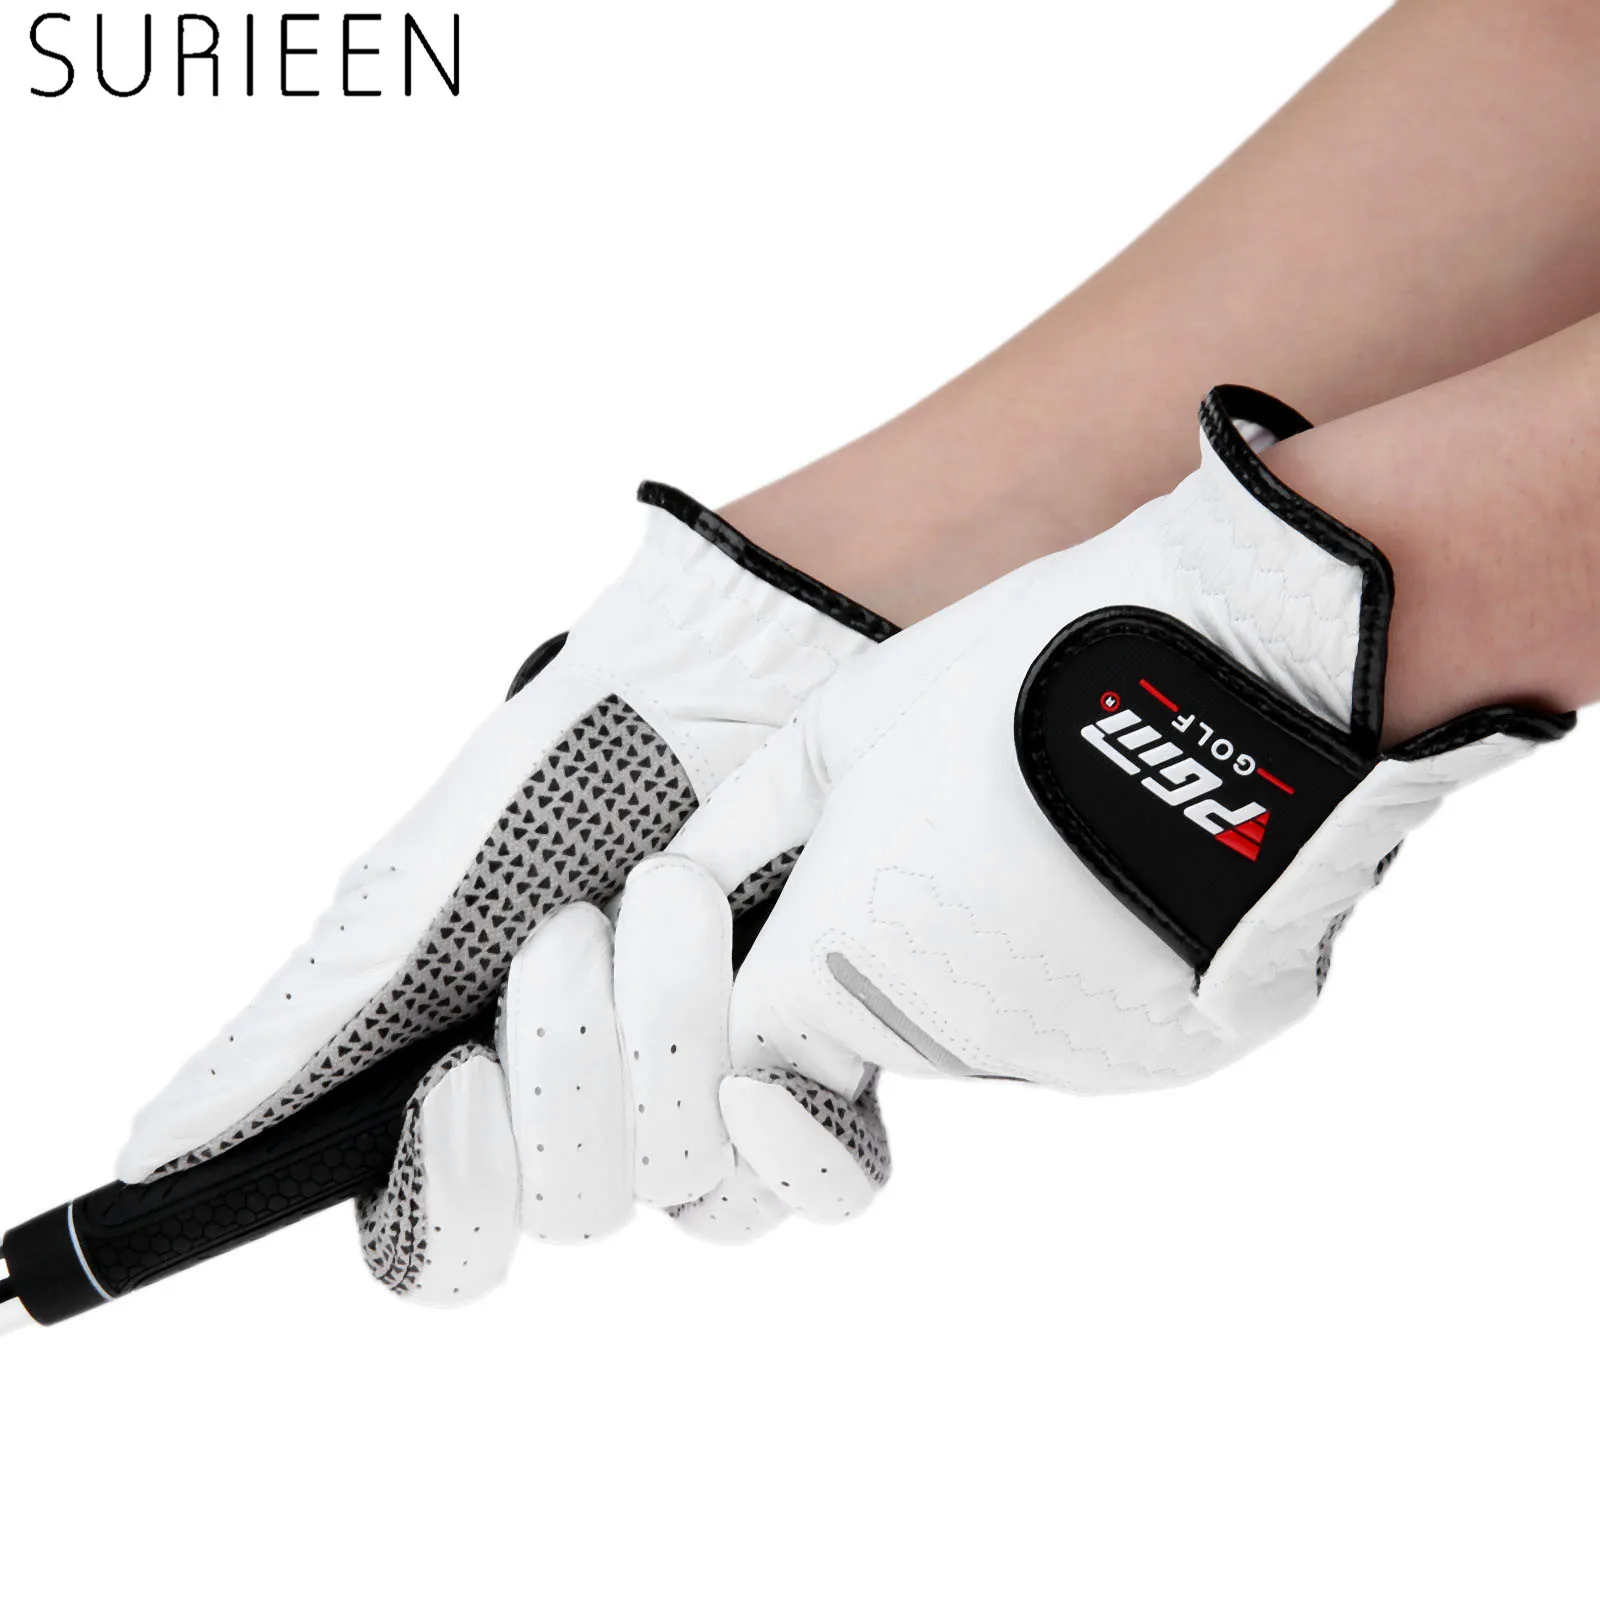 SURIEEN Cabretta кожаные перчатки для гольфа мужские левая и правая рука мягкая дышащая овчина противоскользящие мужские перчатки для гольфа спортивные